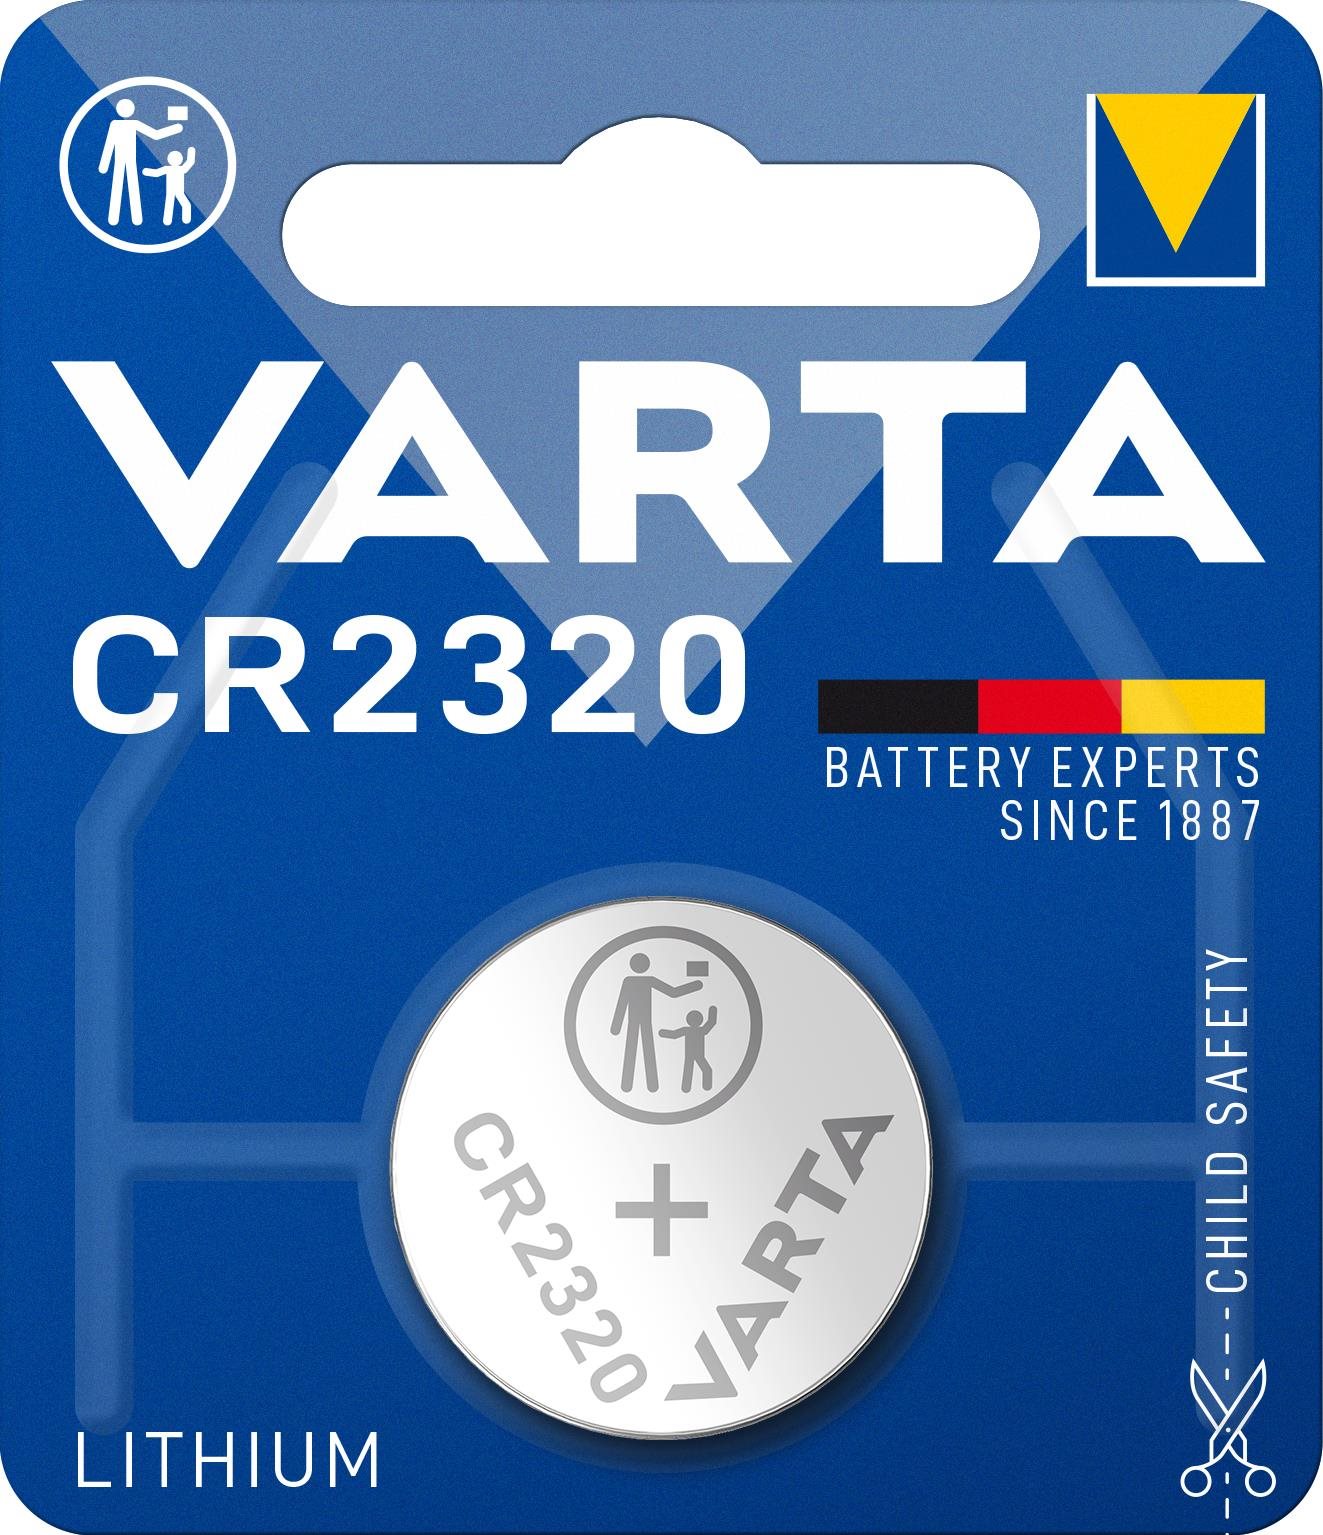 Varta CR 2320